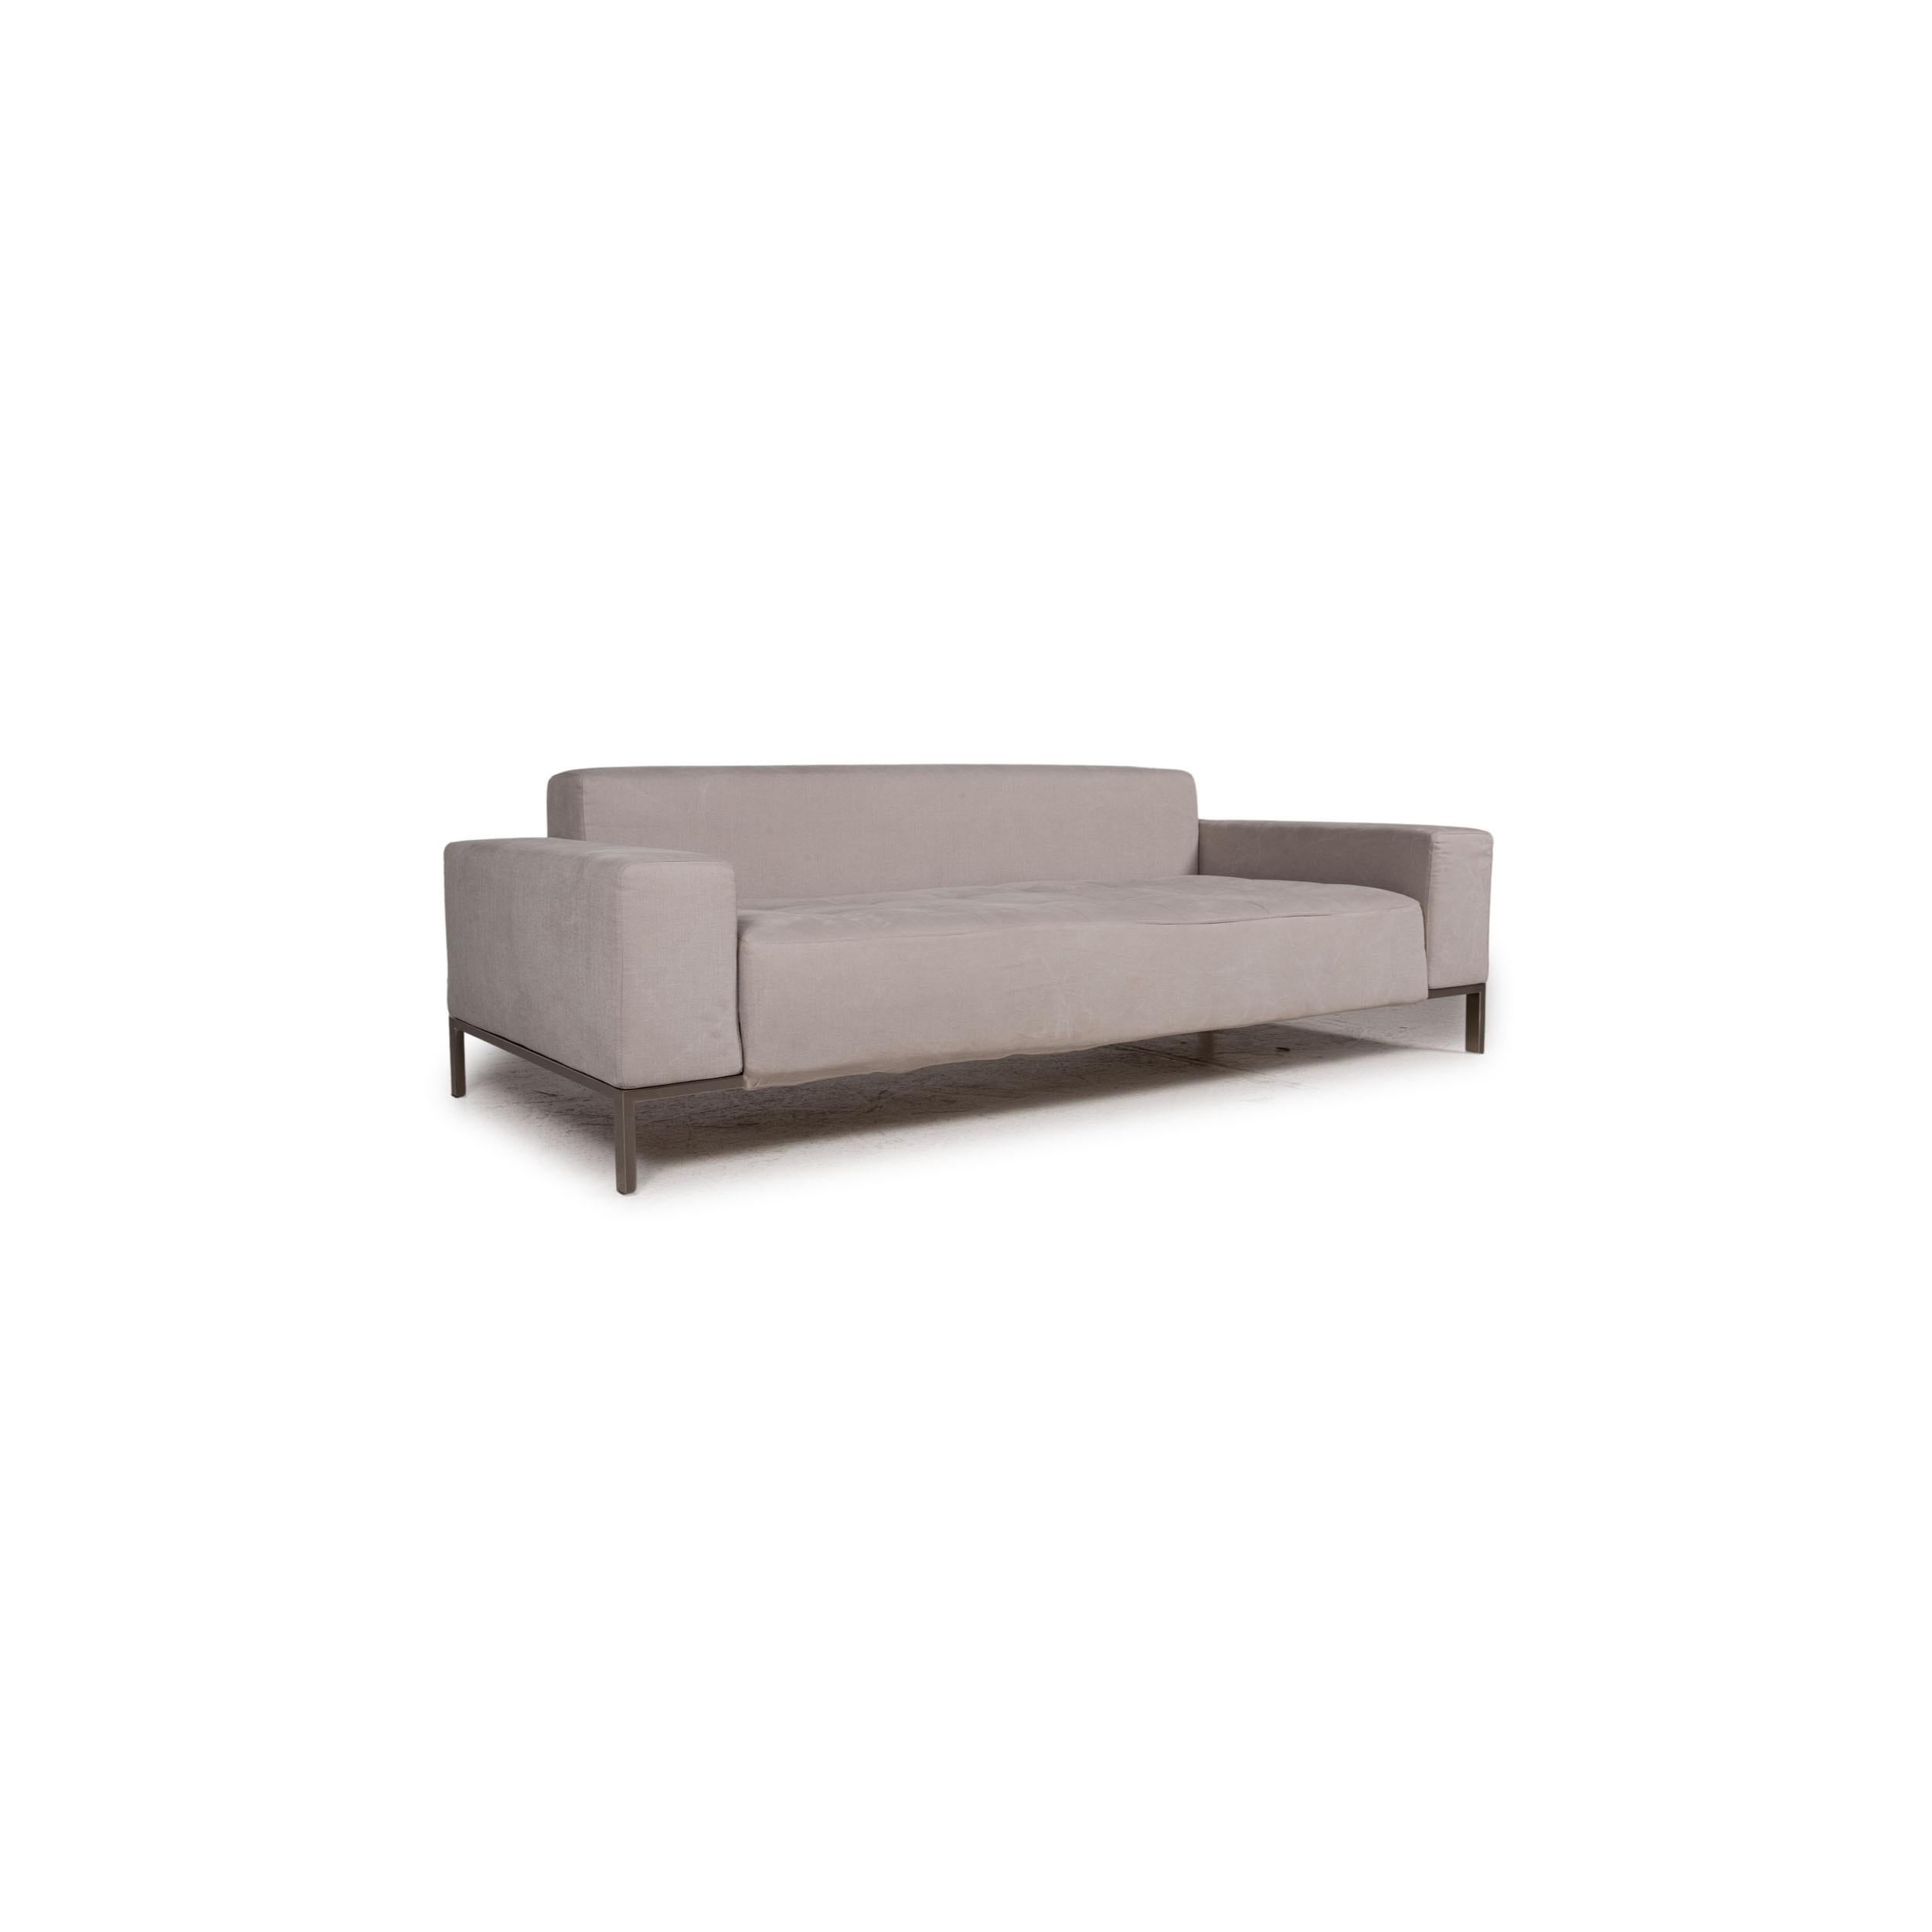 Zanotta Alfa Fabric Sofa Gray Two-Seater Couch In Good Condition For Sale In Cologne, DE